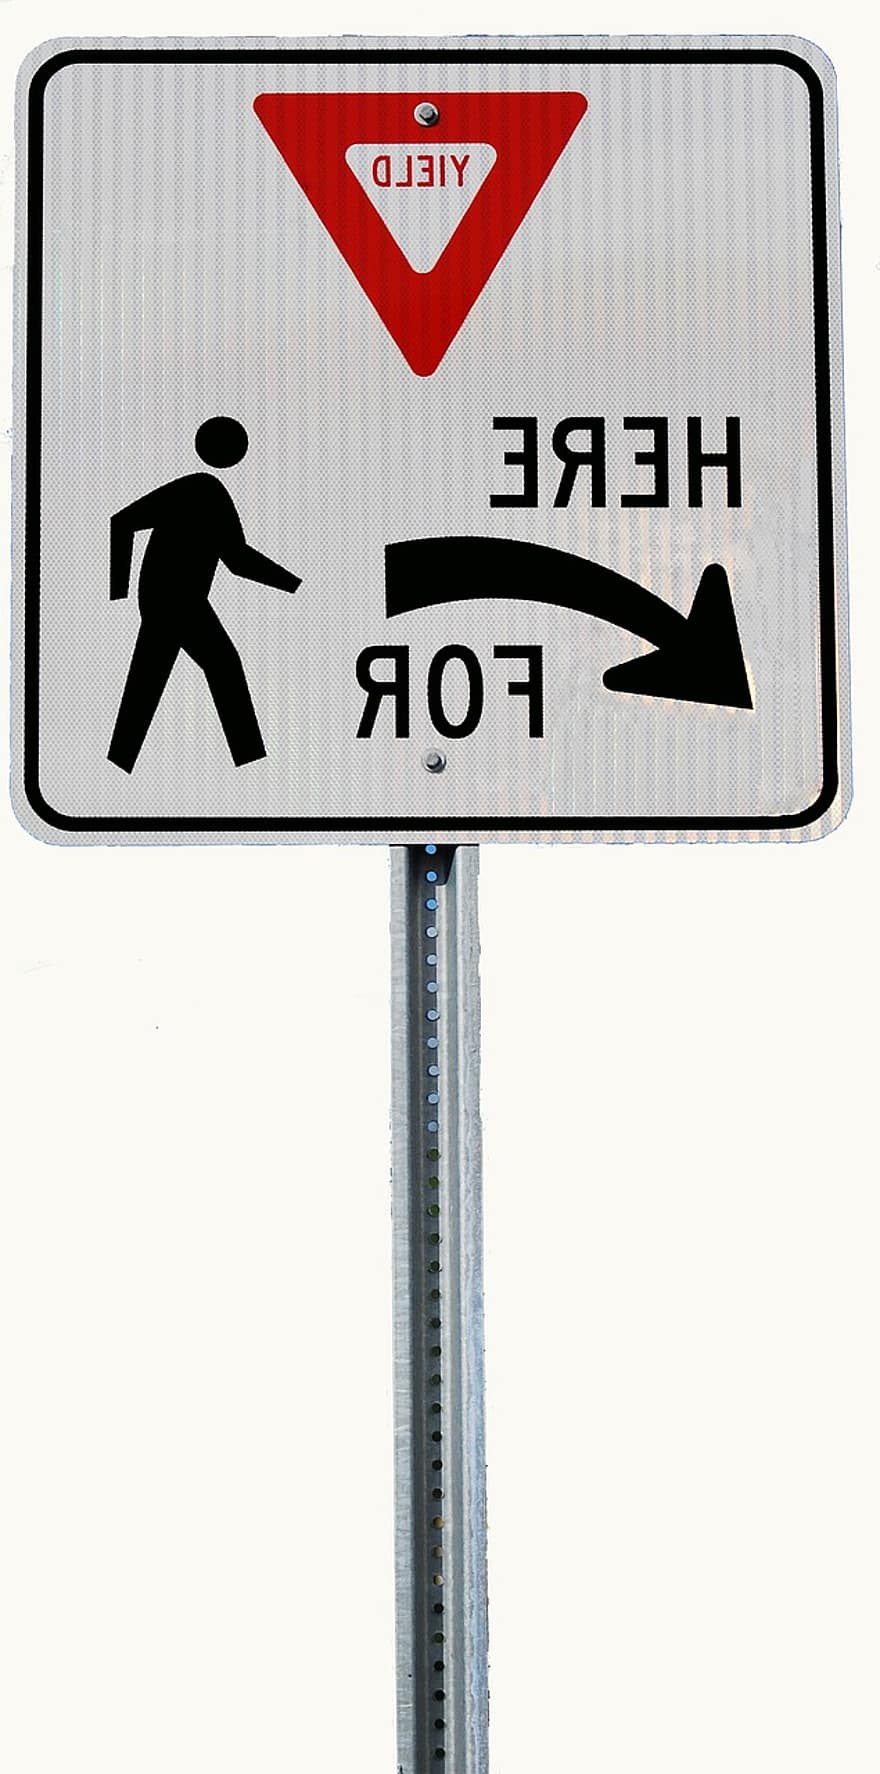 derliaus ženklas, kelio zenklas, kelio ženklas, įspėjimas, ženklas, įspėjamasis ženklas, simbolis, eismas, krypties ženklas, kryptis, pavojus